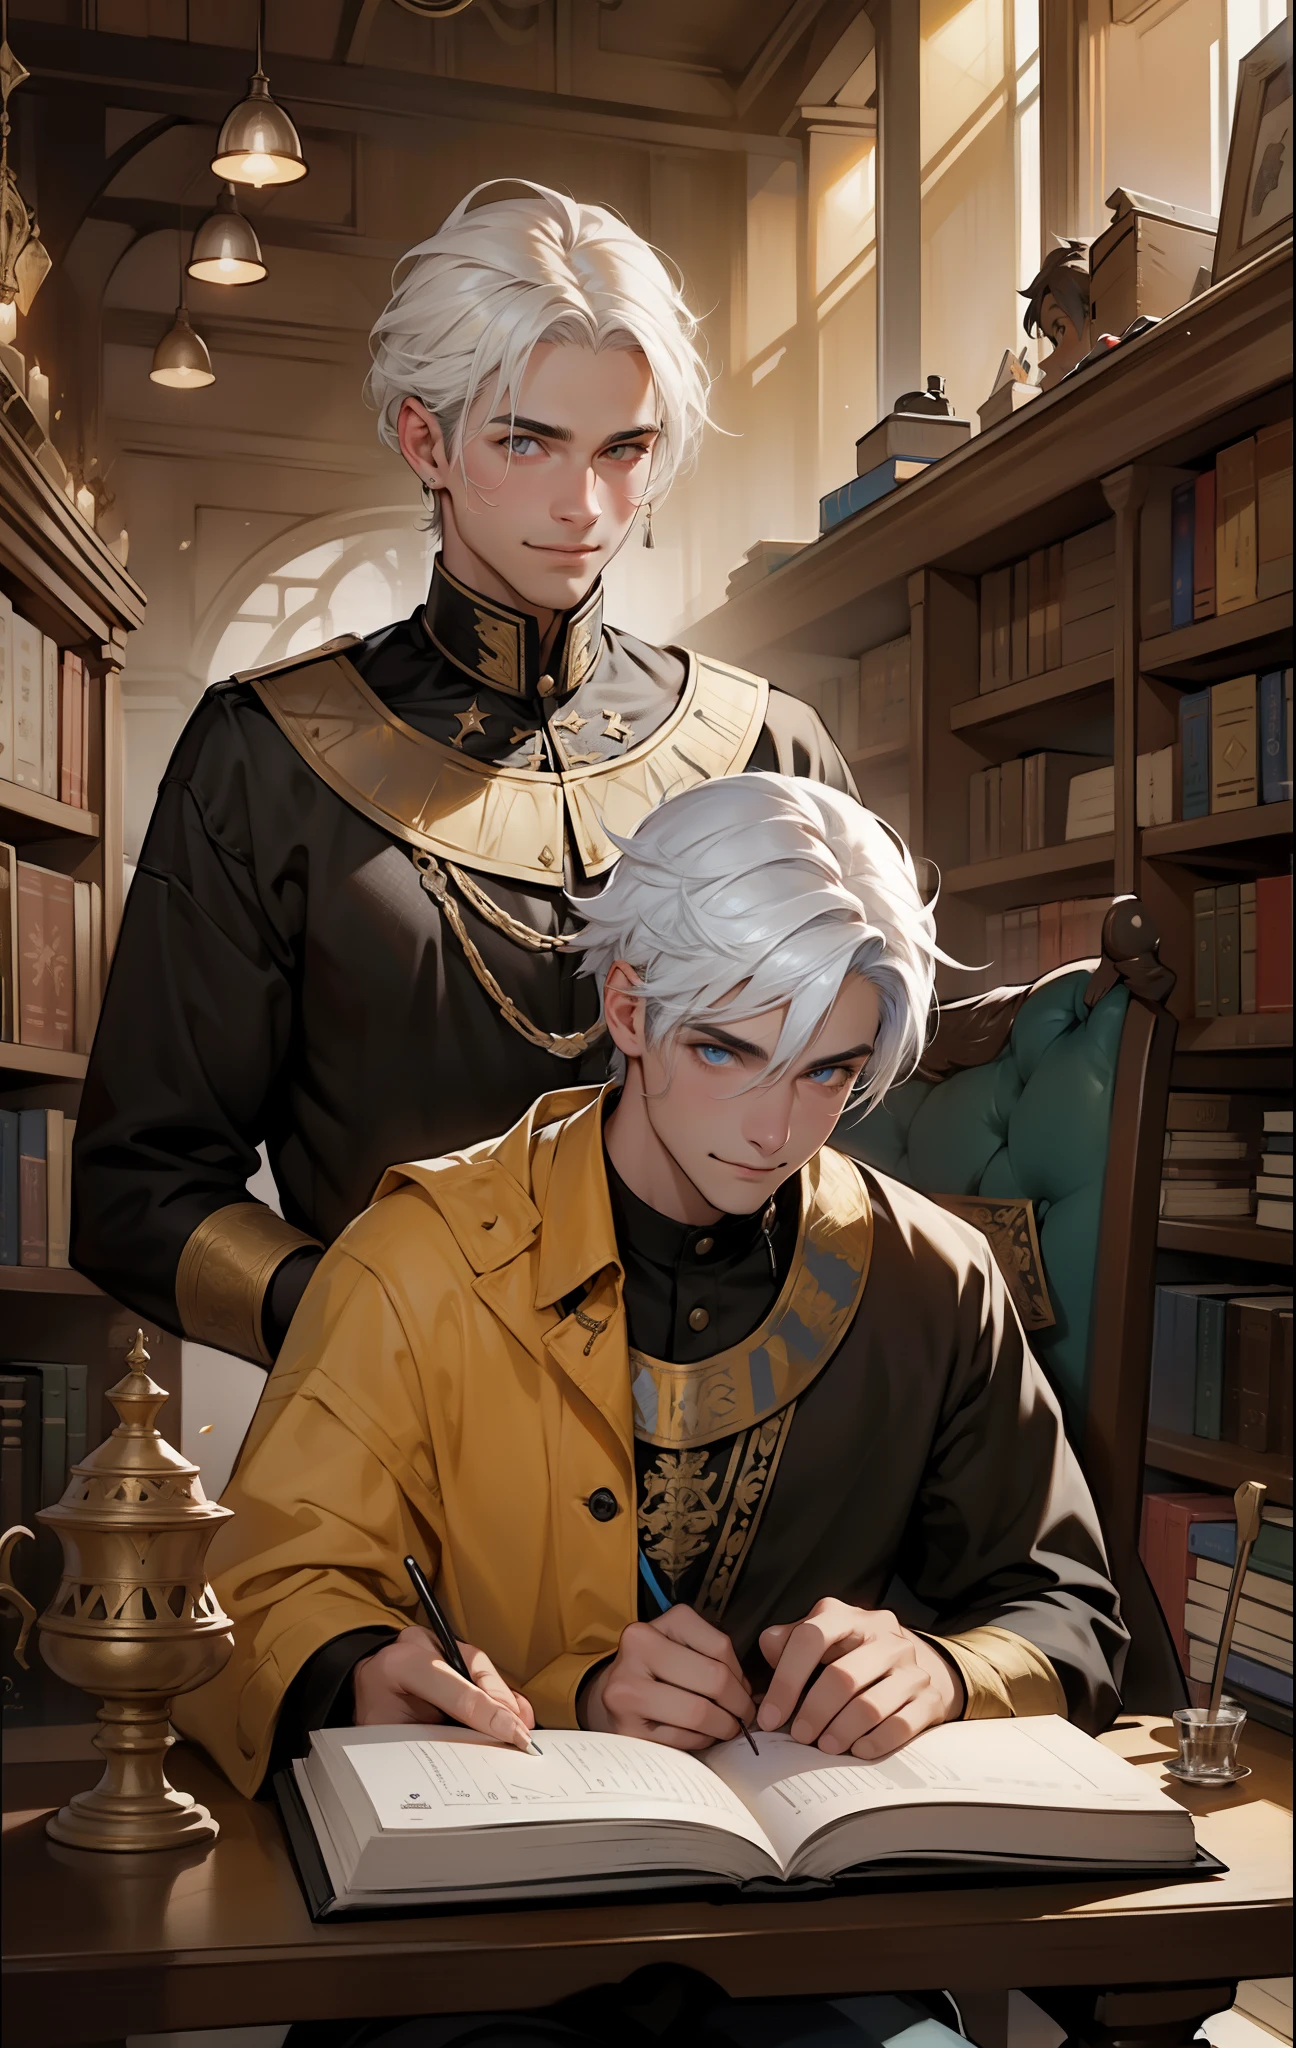 هناك رجلان، أحدهما واقف بابتسامة شريرة وجنون., واحد جالس يقرأ كتاب شعر أبيض عيون صفراء